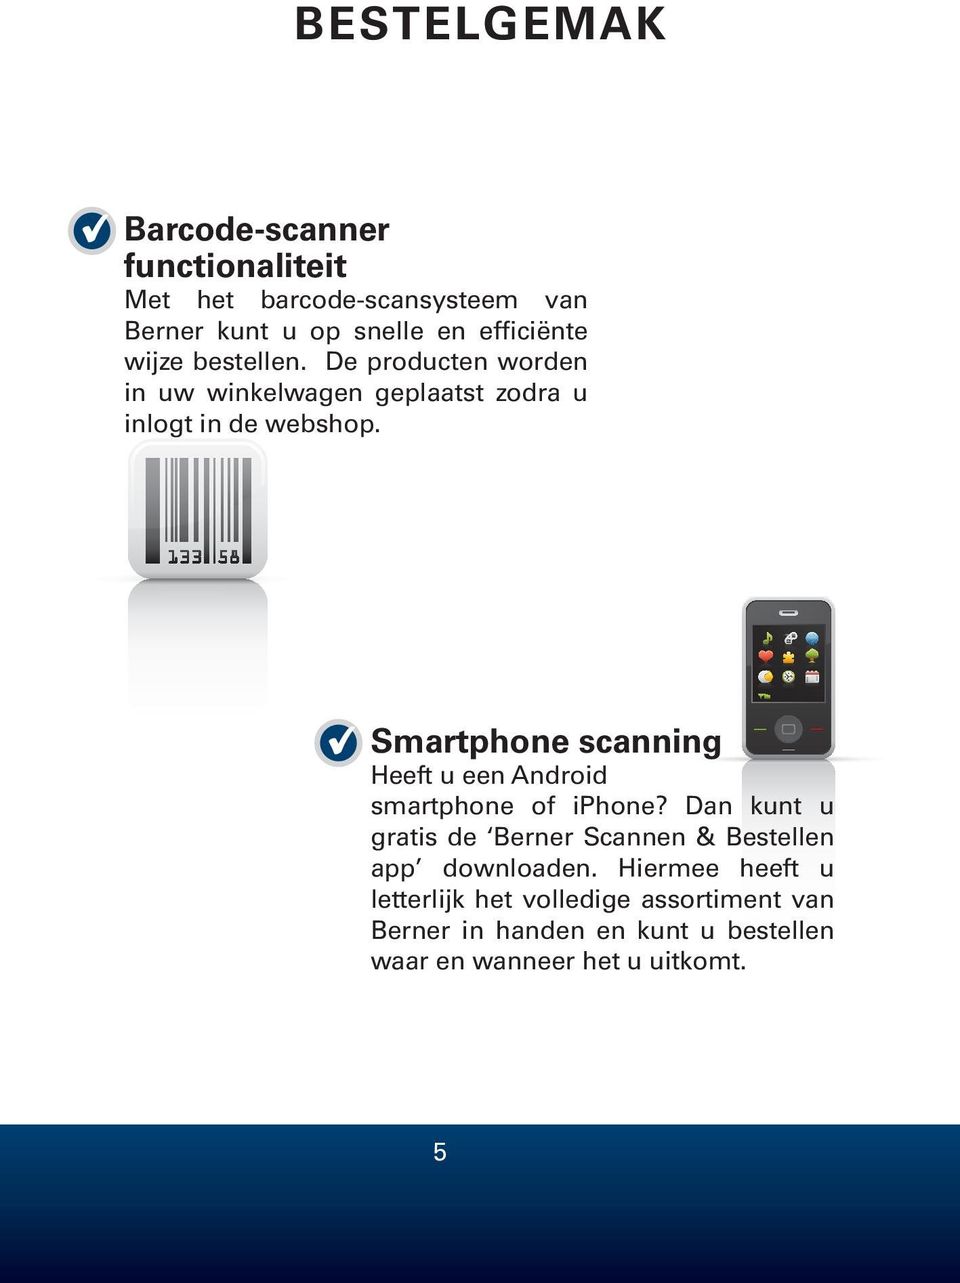 Smartphone scanning Heeft u een Android smartphone of iphone?